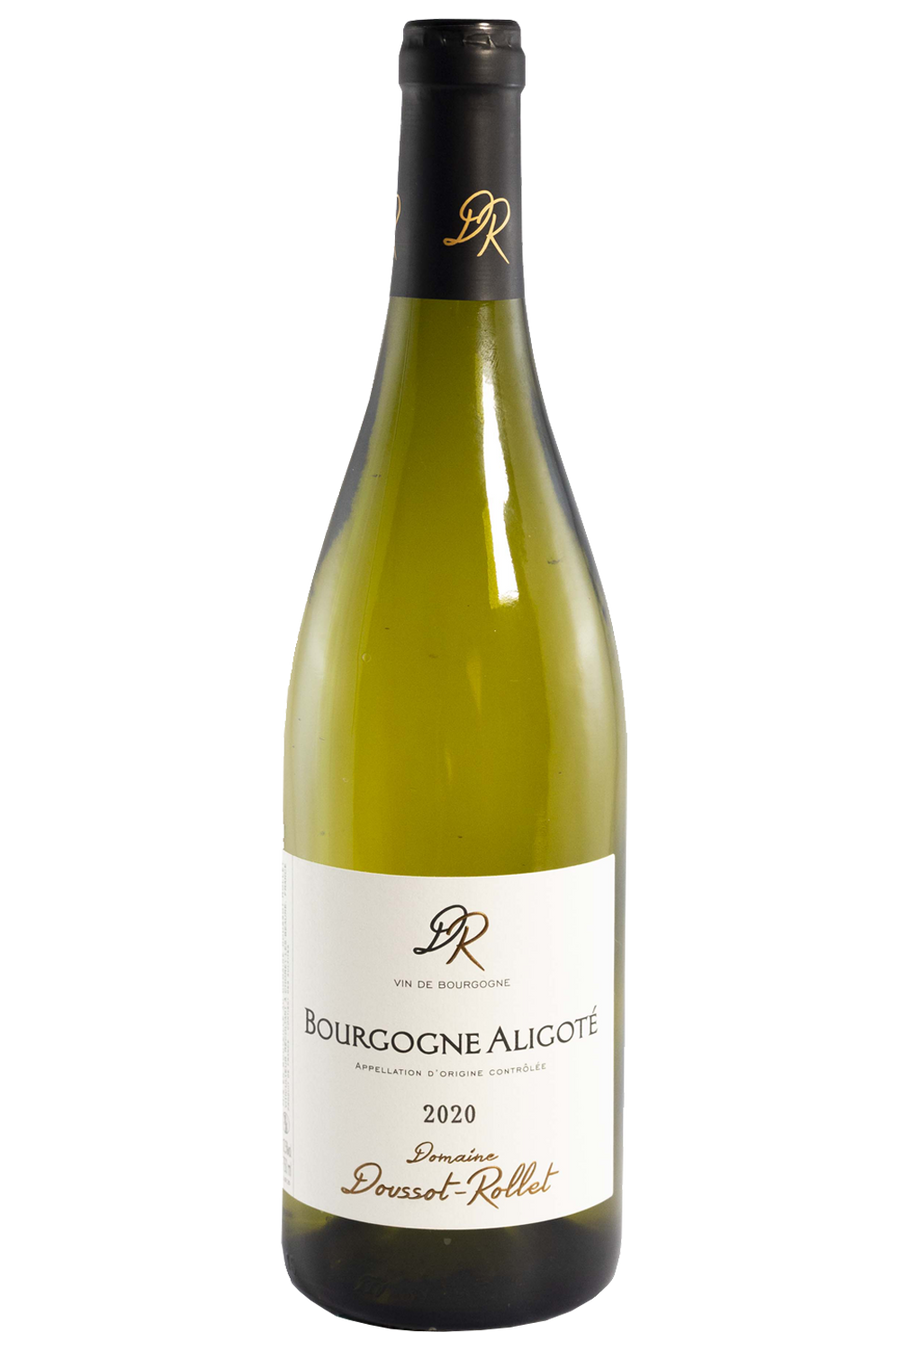 Doussot-Rollet Bourgogne Aligote Blanc 2020